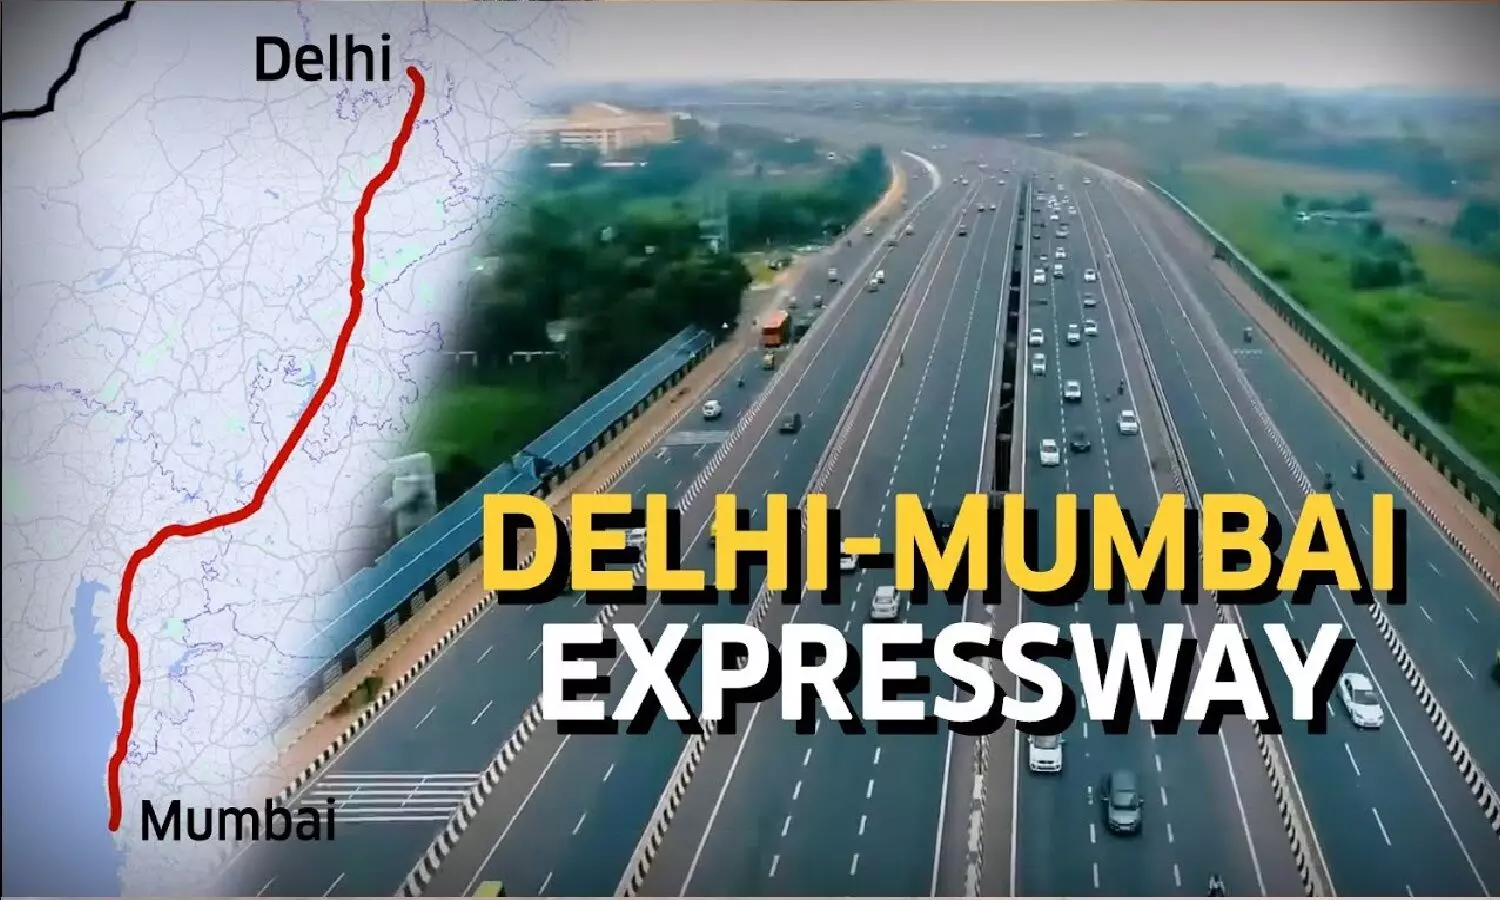 Indias Longest Expressway: दिल्ली टू मुंबई एक्सप्रेस वे के बारे में सब जानें, यह MP से होकर गुजरेगा